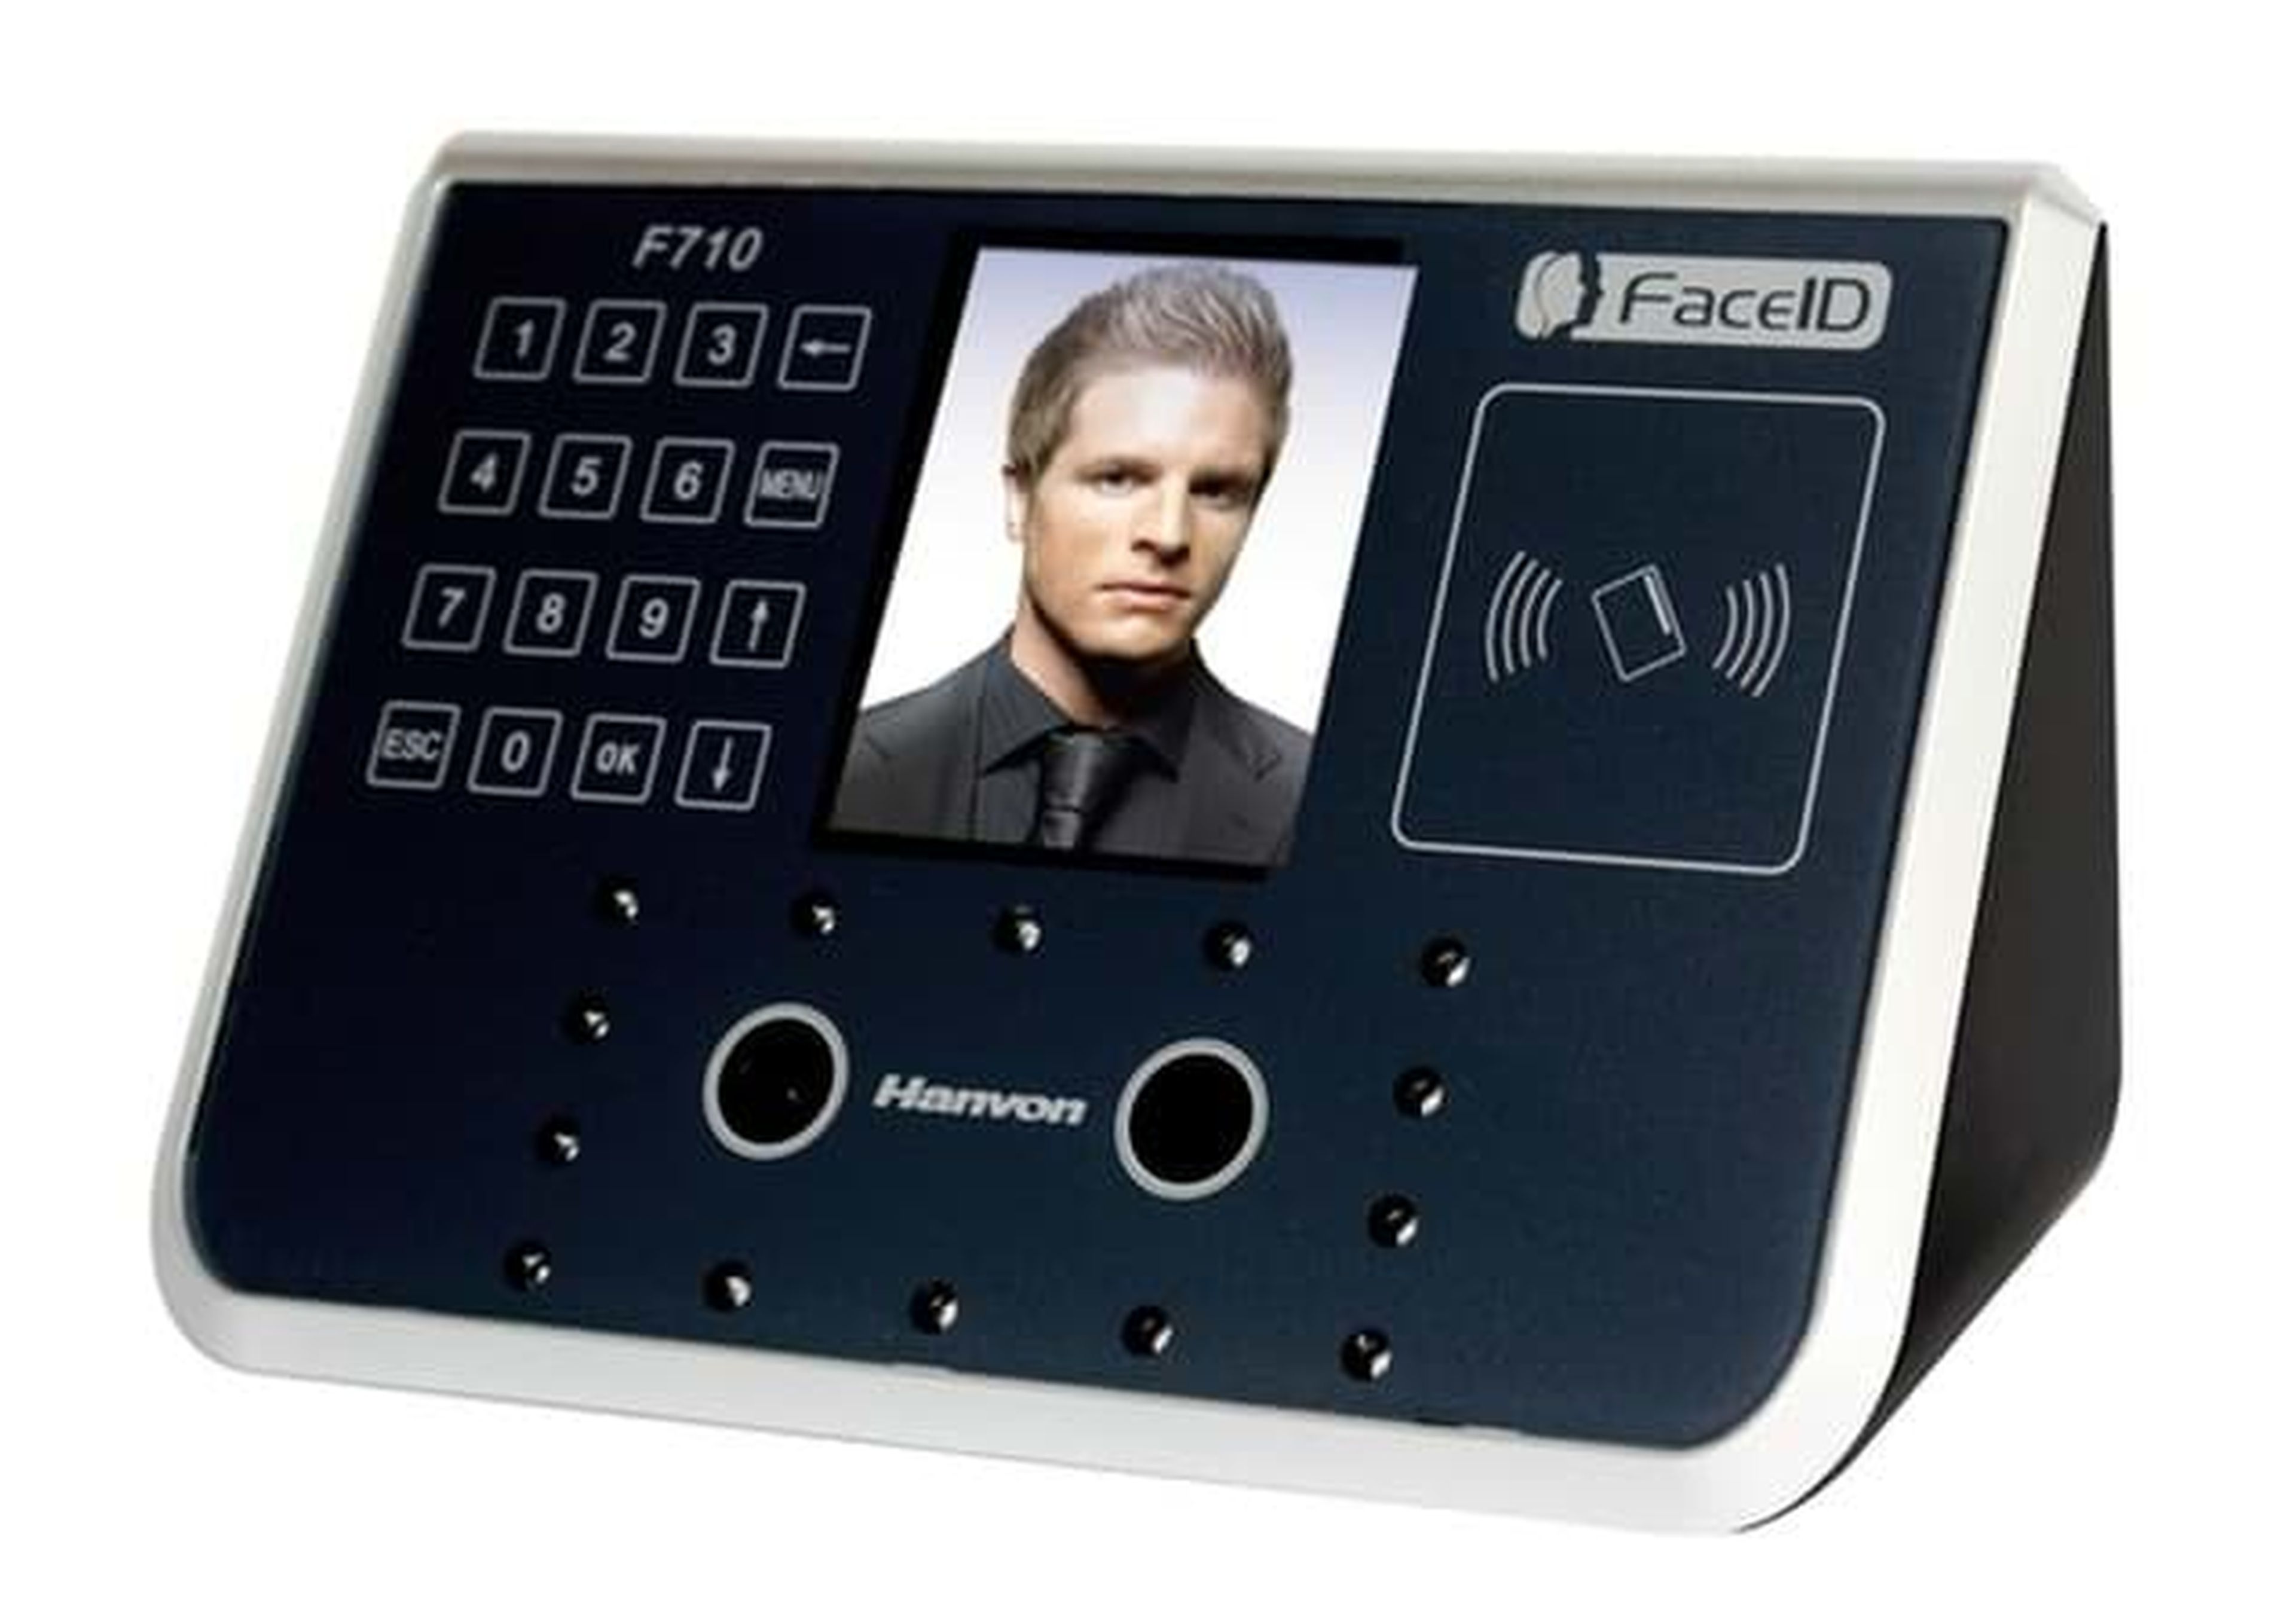 Dispositivo de reconocimiento facial de la empresa Hanvon que utiliza el instituto Enric Borràs.